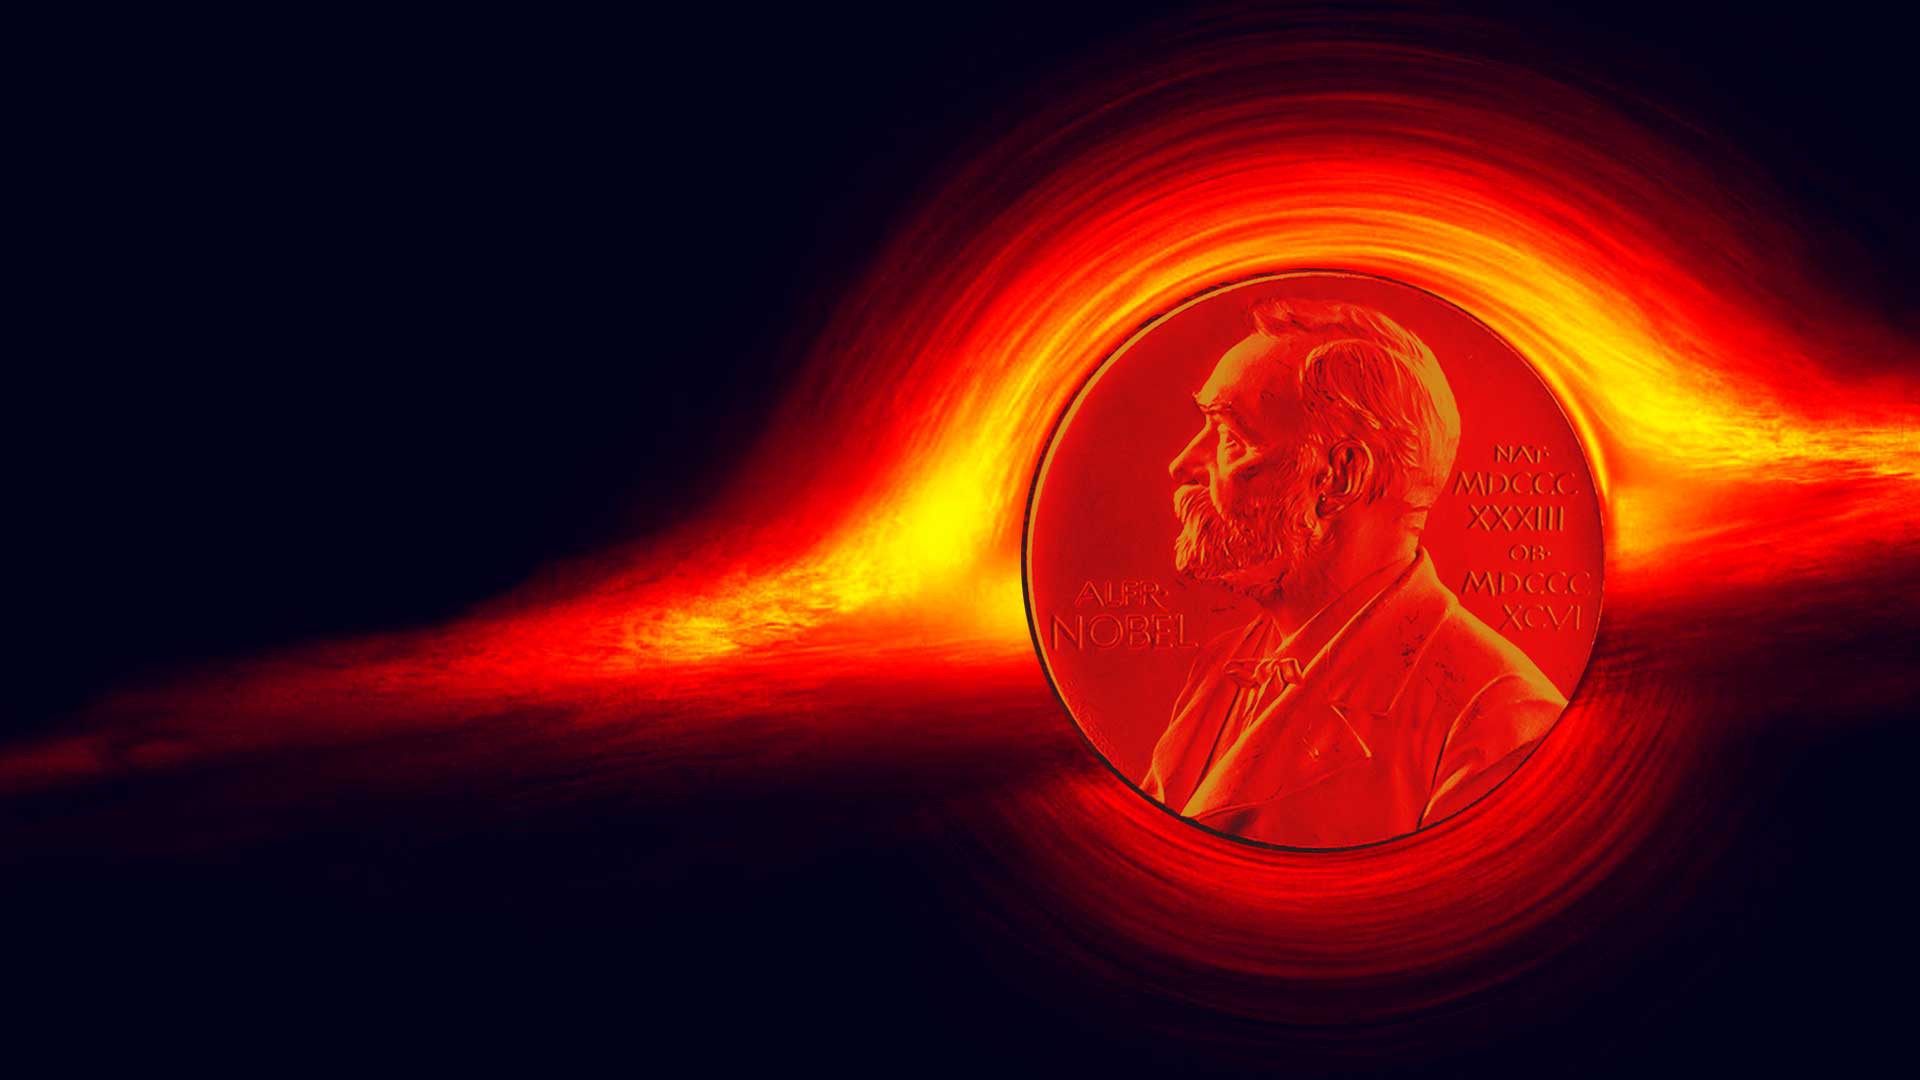 Dailystorm - Ученые пролили свет на черные дыры: за что вручили Нобелевку по физике